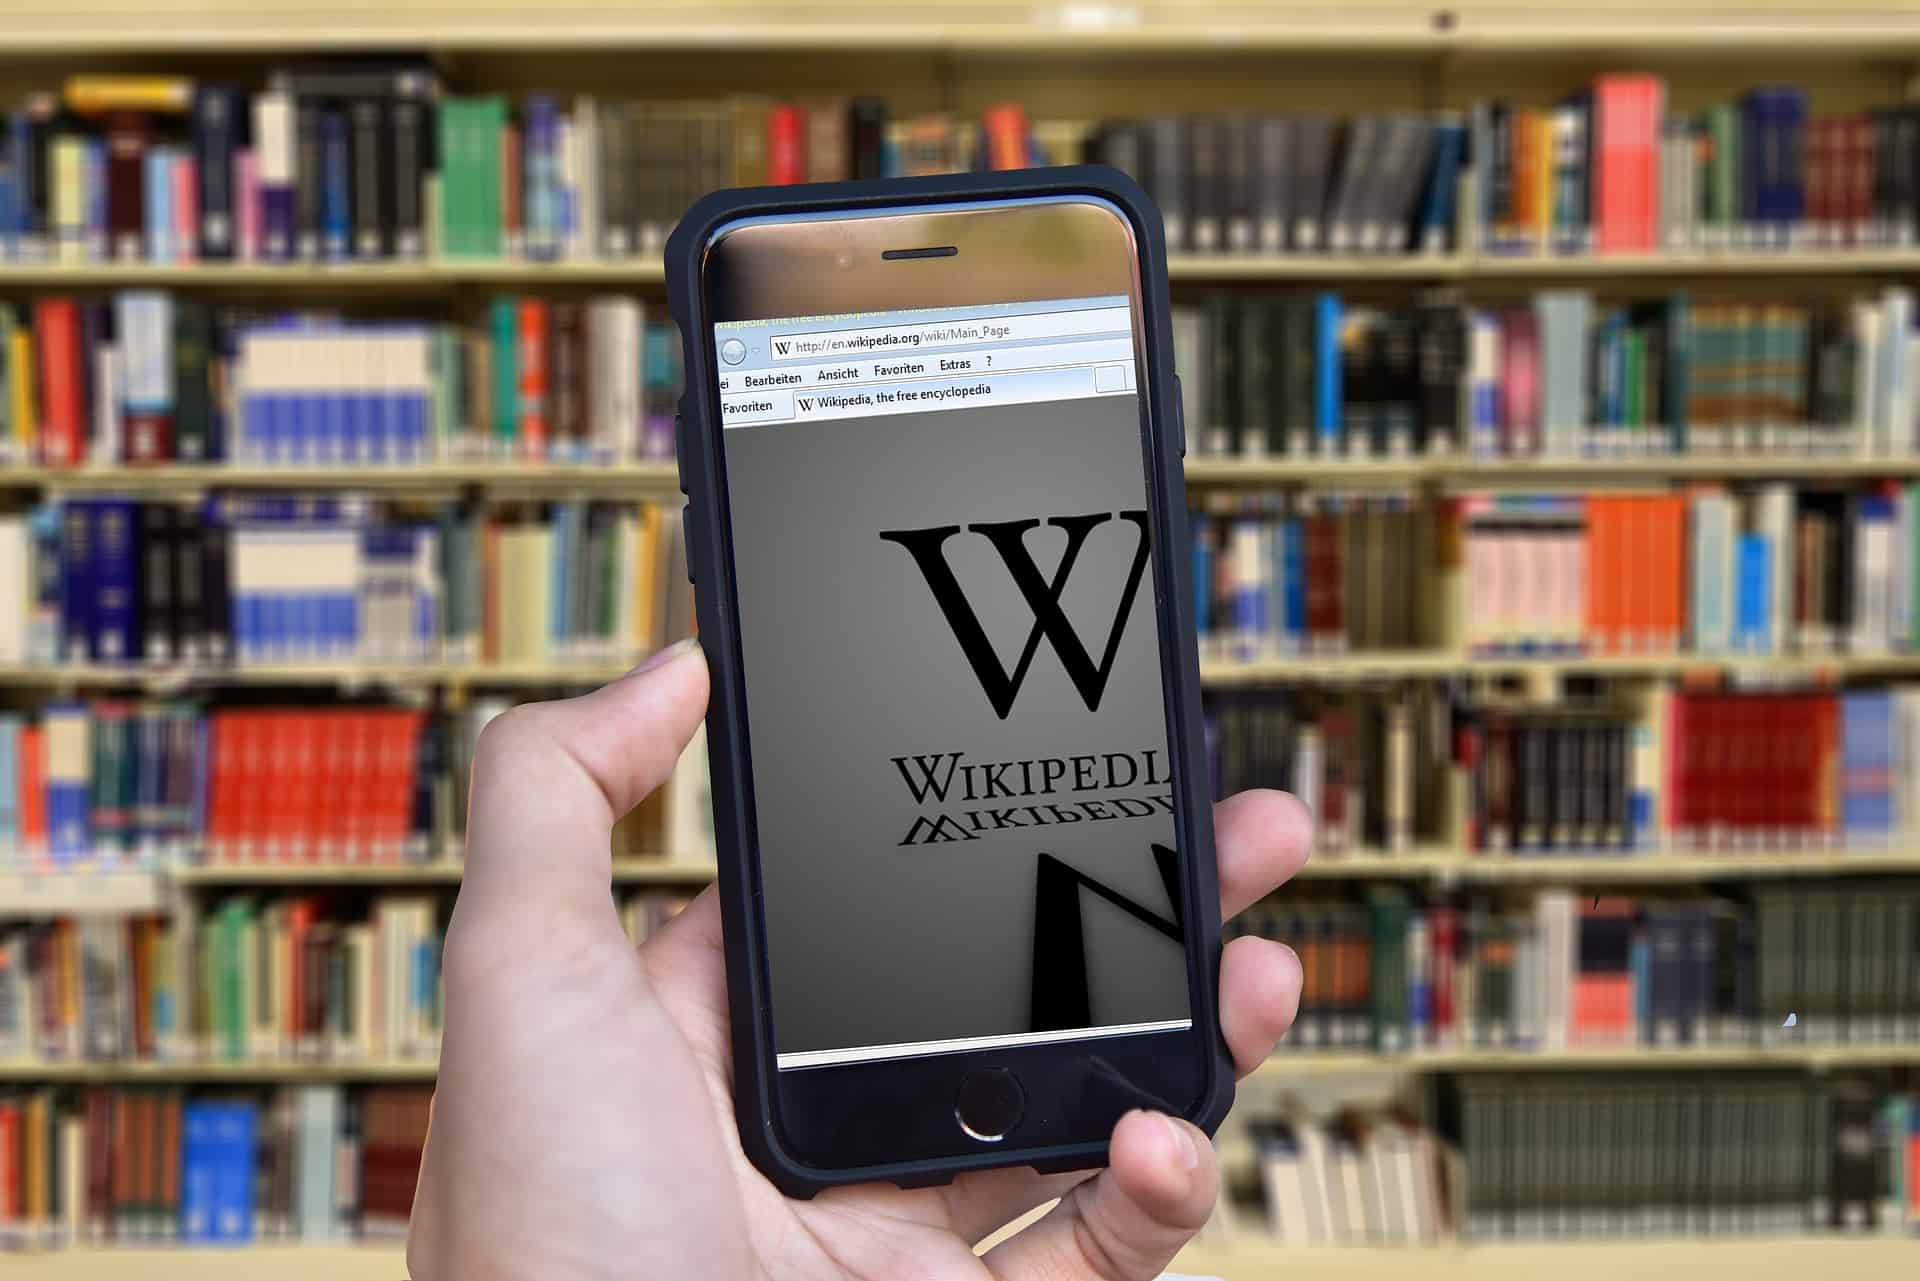 من هو مؤسس موقع ويكيبيديا و أين يقع مقر الشركة؟